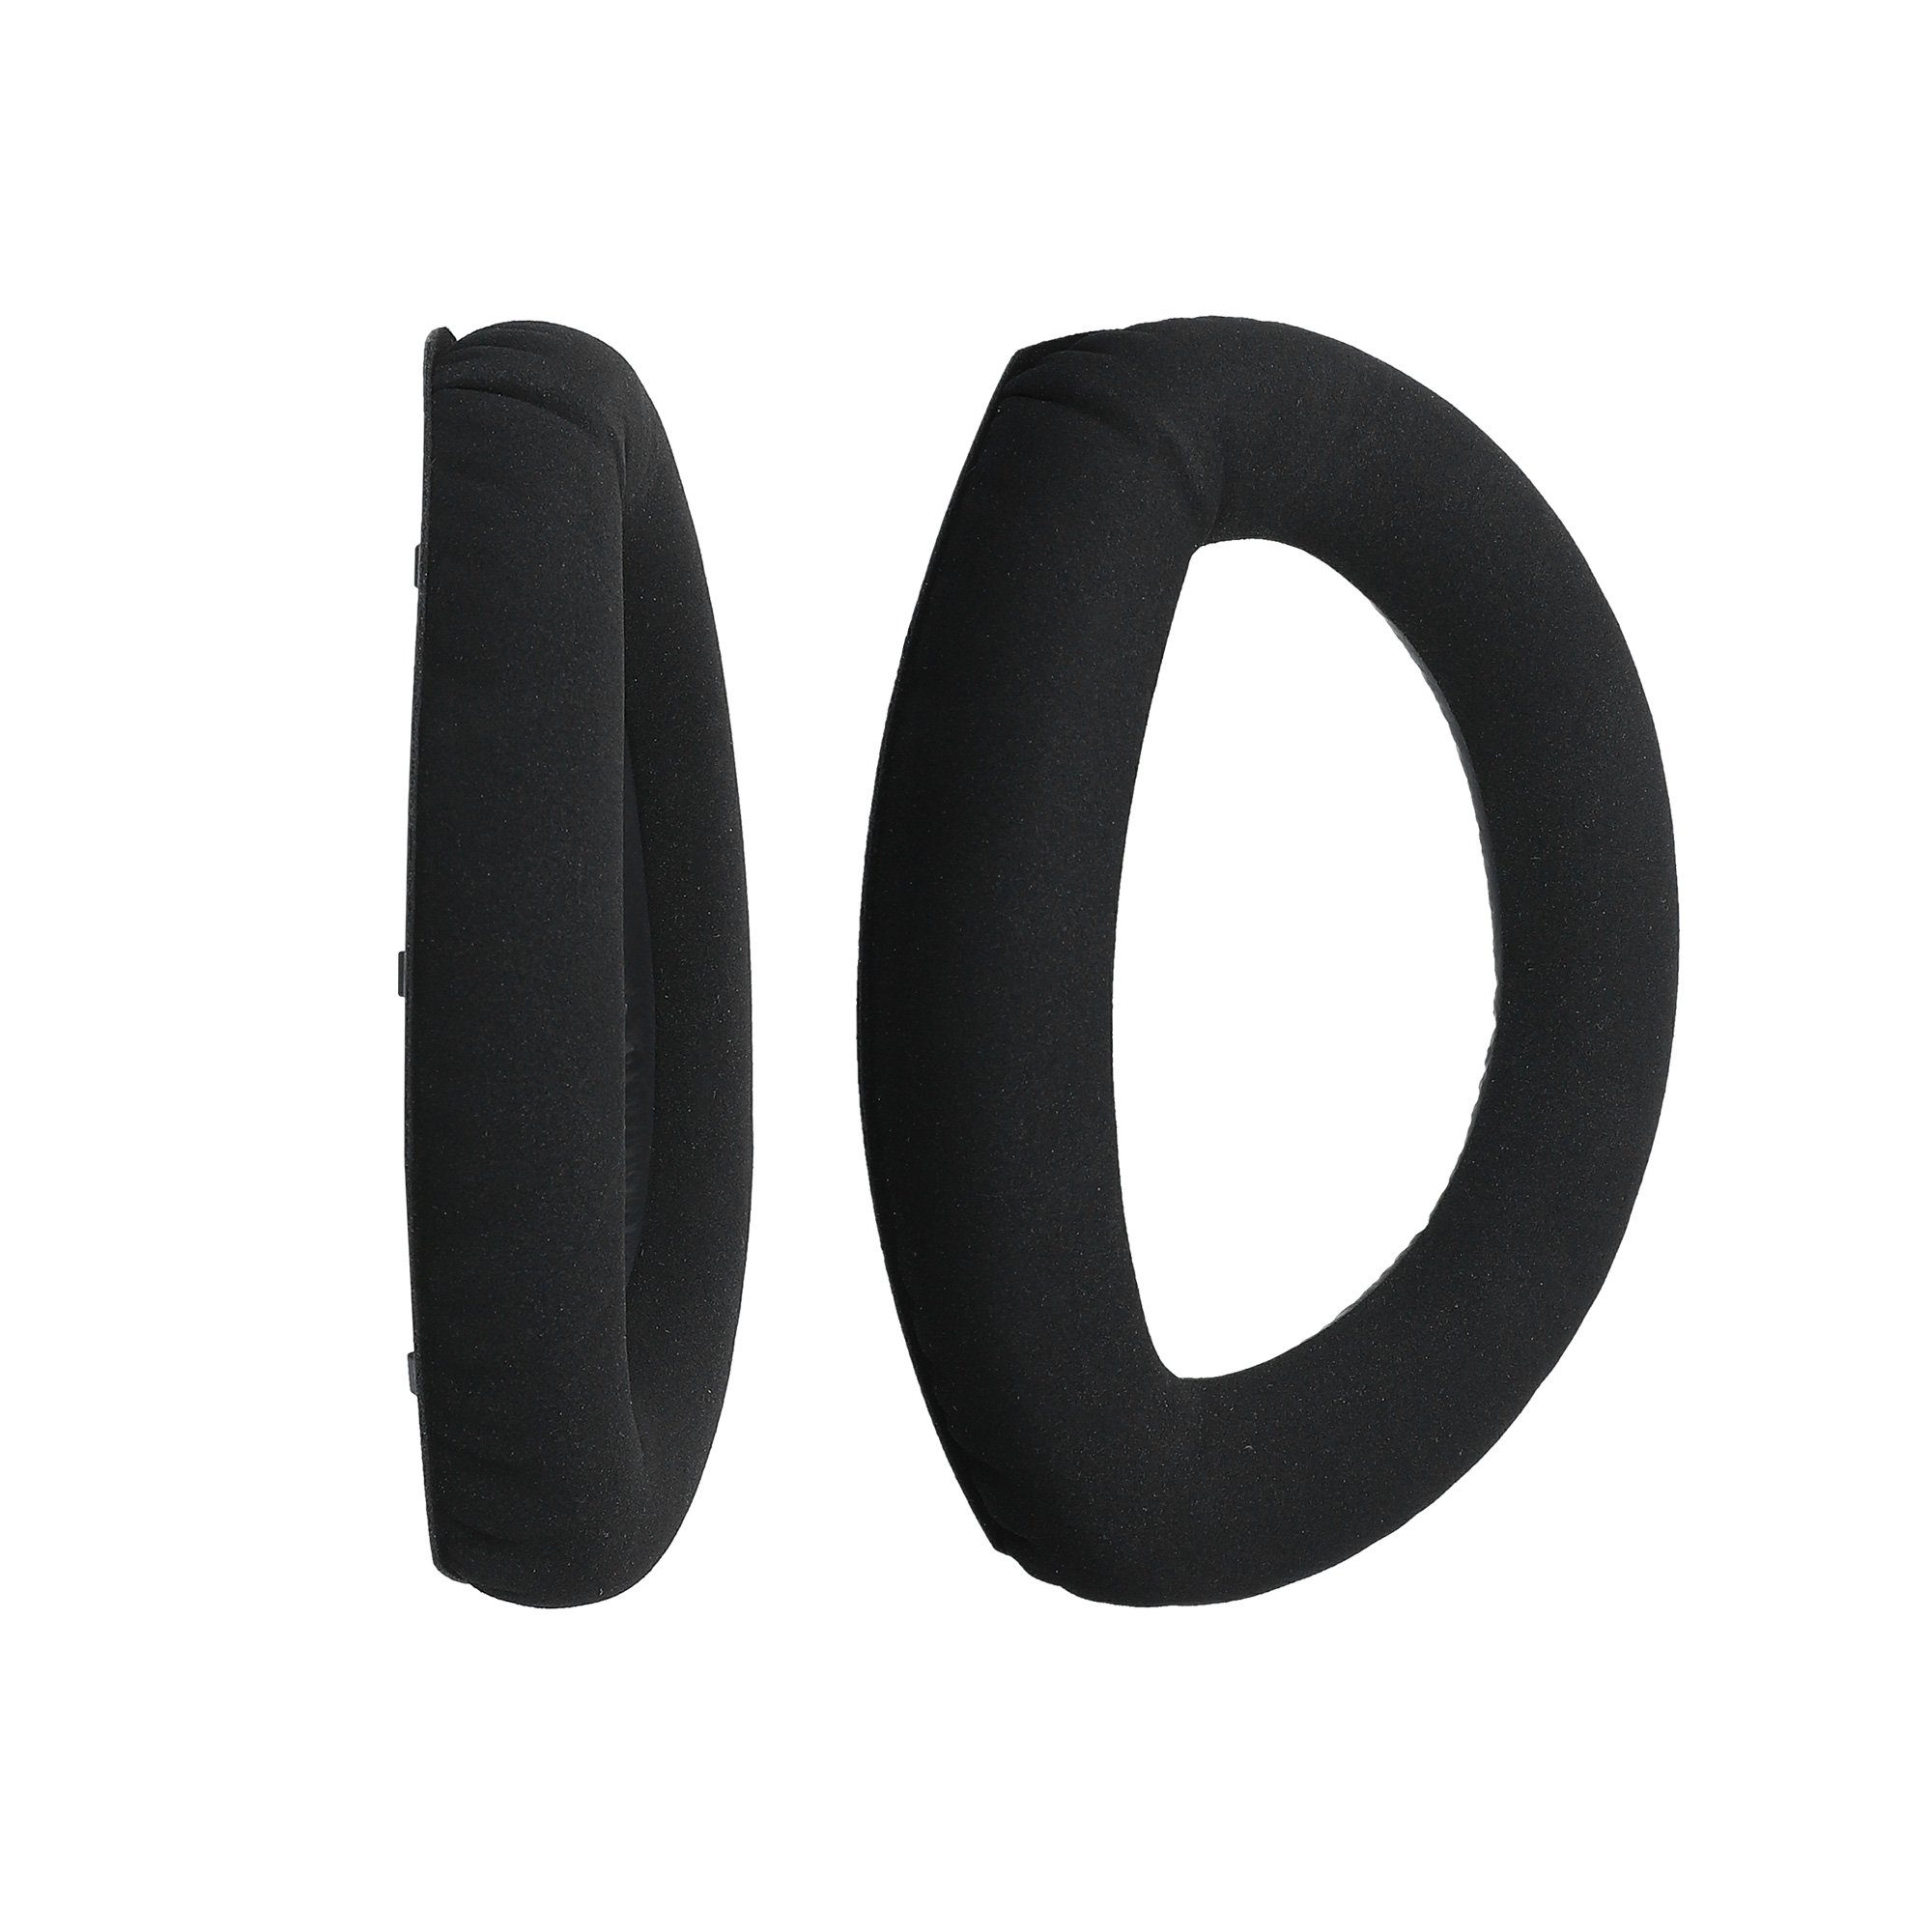 Ohr 2x für Headphones) Kopfhörer (Ohrpolster Polster Kunstleder - Over Ear HD700 Polster Sennheiser Ohrpolster kwmobile für